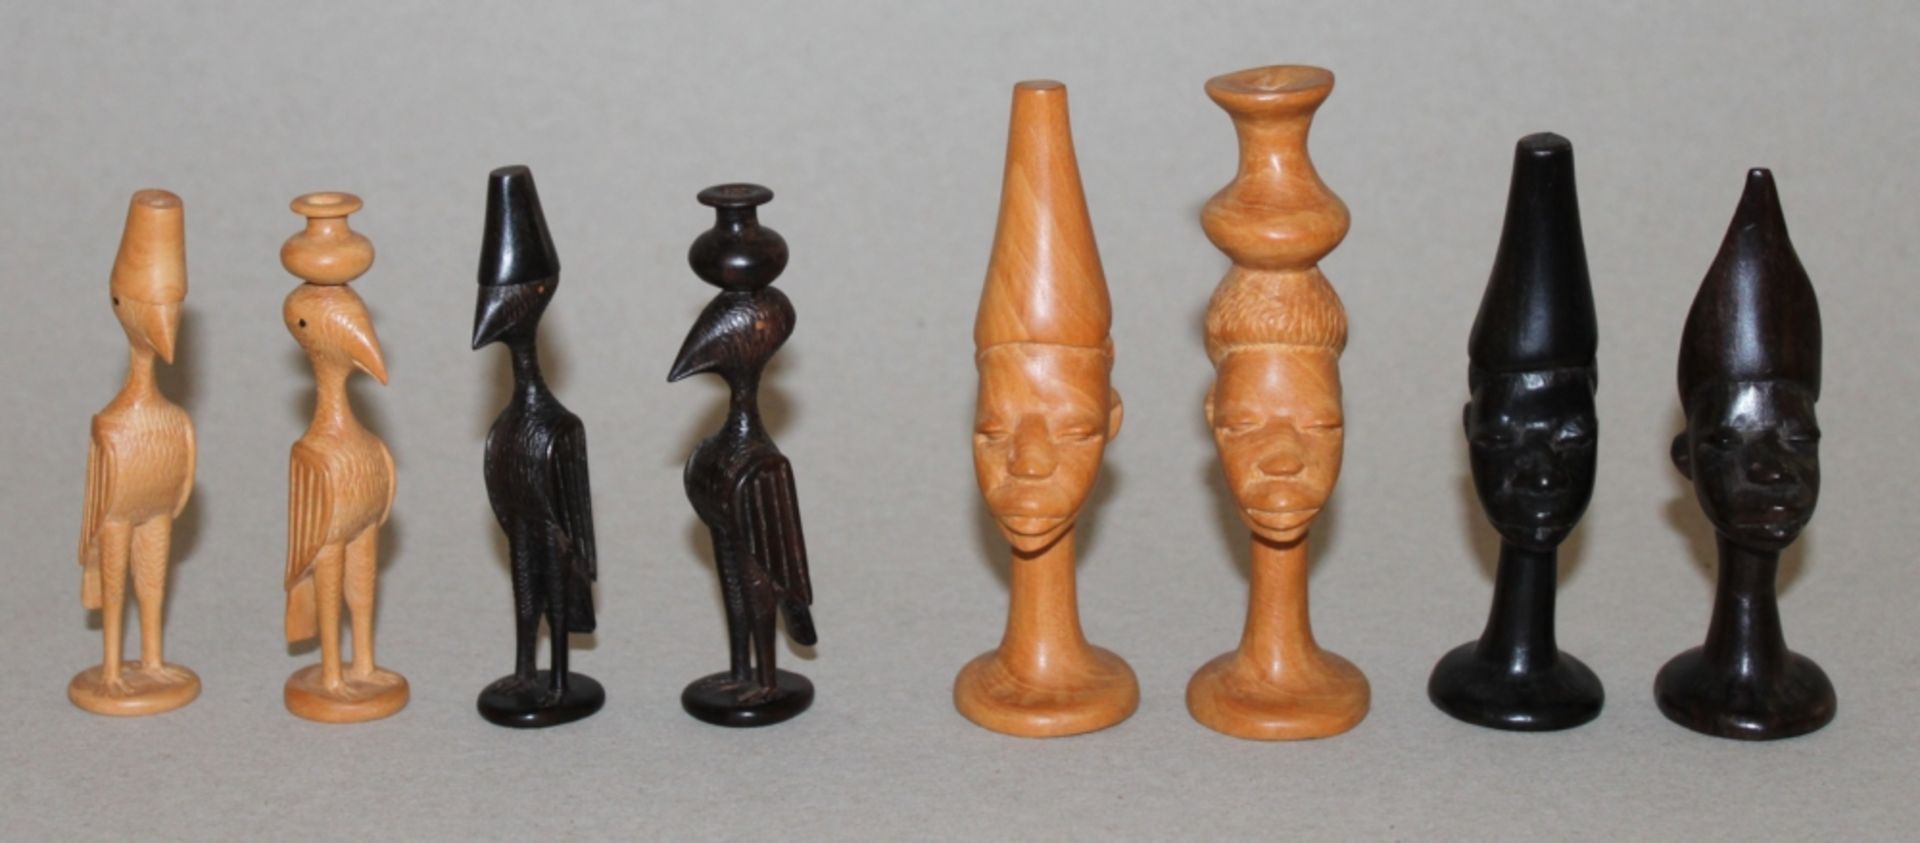 Afrika. Schachfiguren aus Holz. "Afrikanisches Vogelschach. Eine Partei in dunkelbraun, die andere